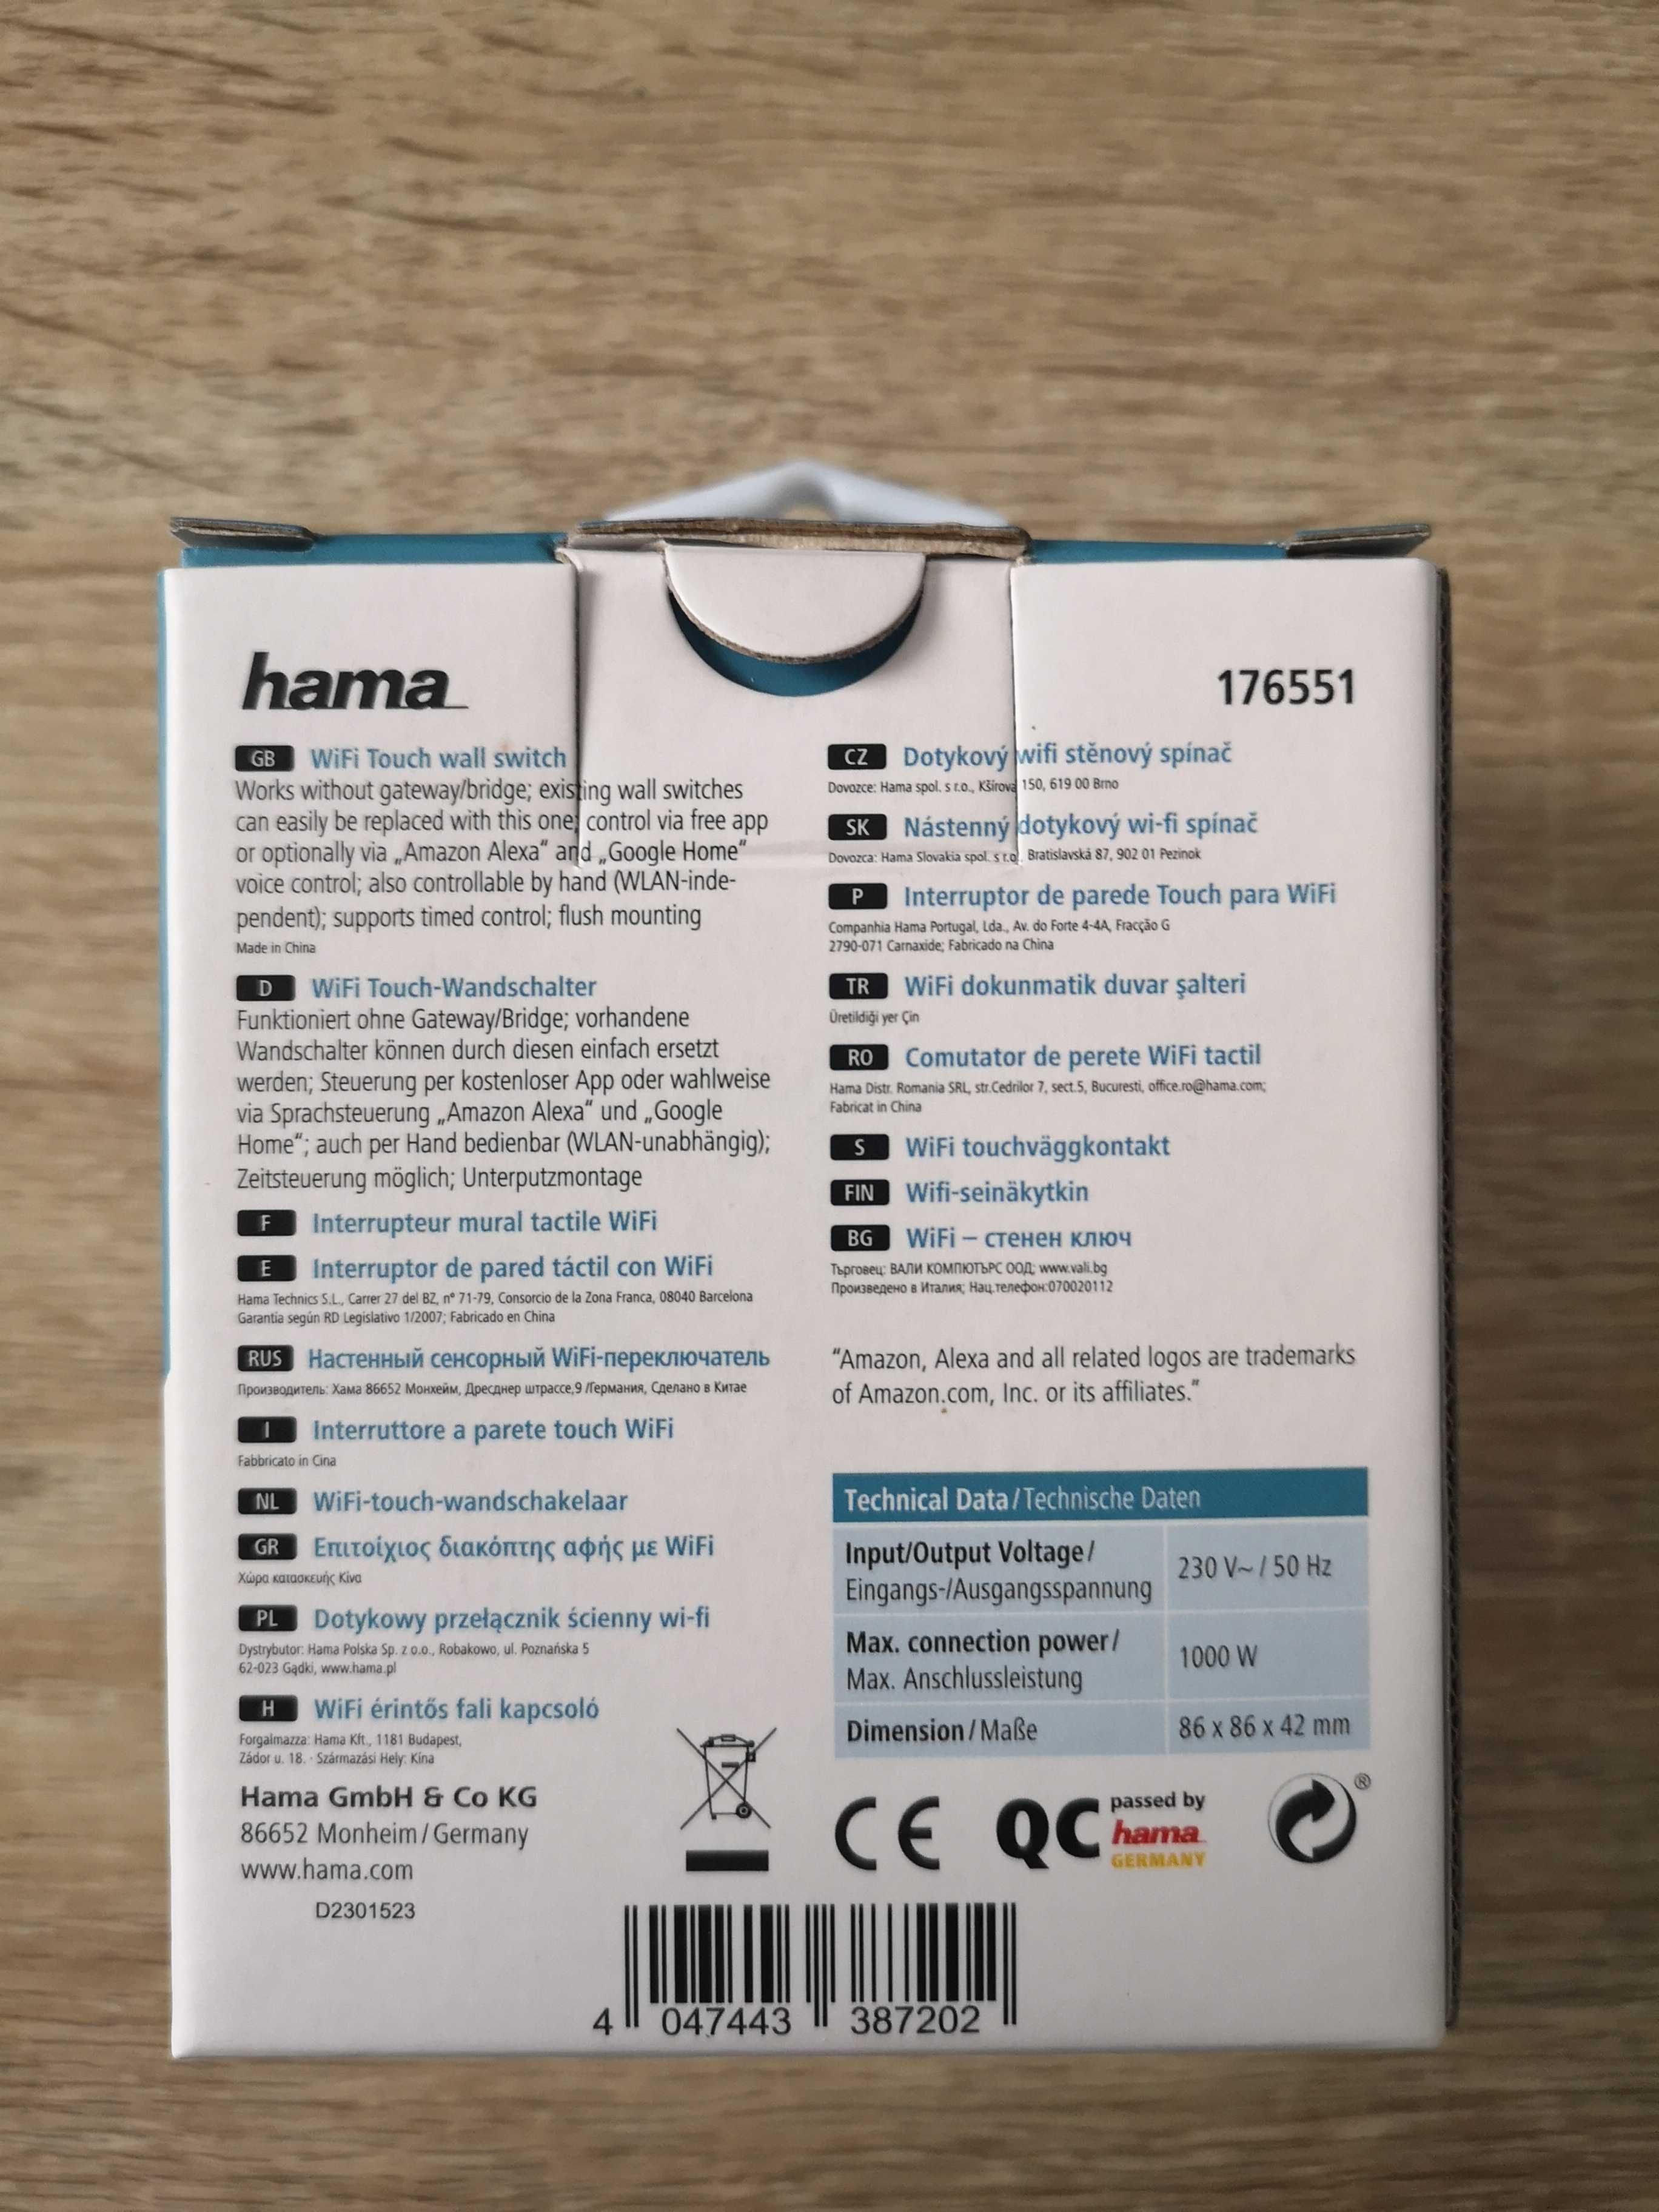 Interruptor Inteligente WiFi Hama - App e assistentes